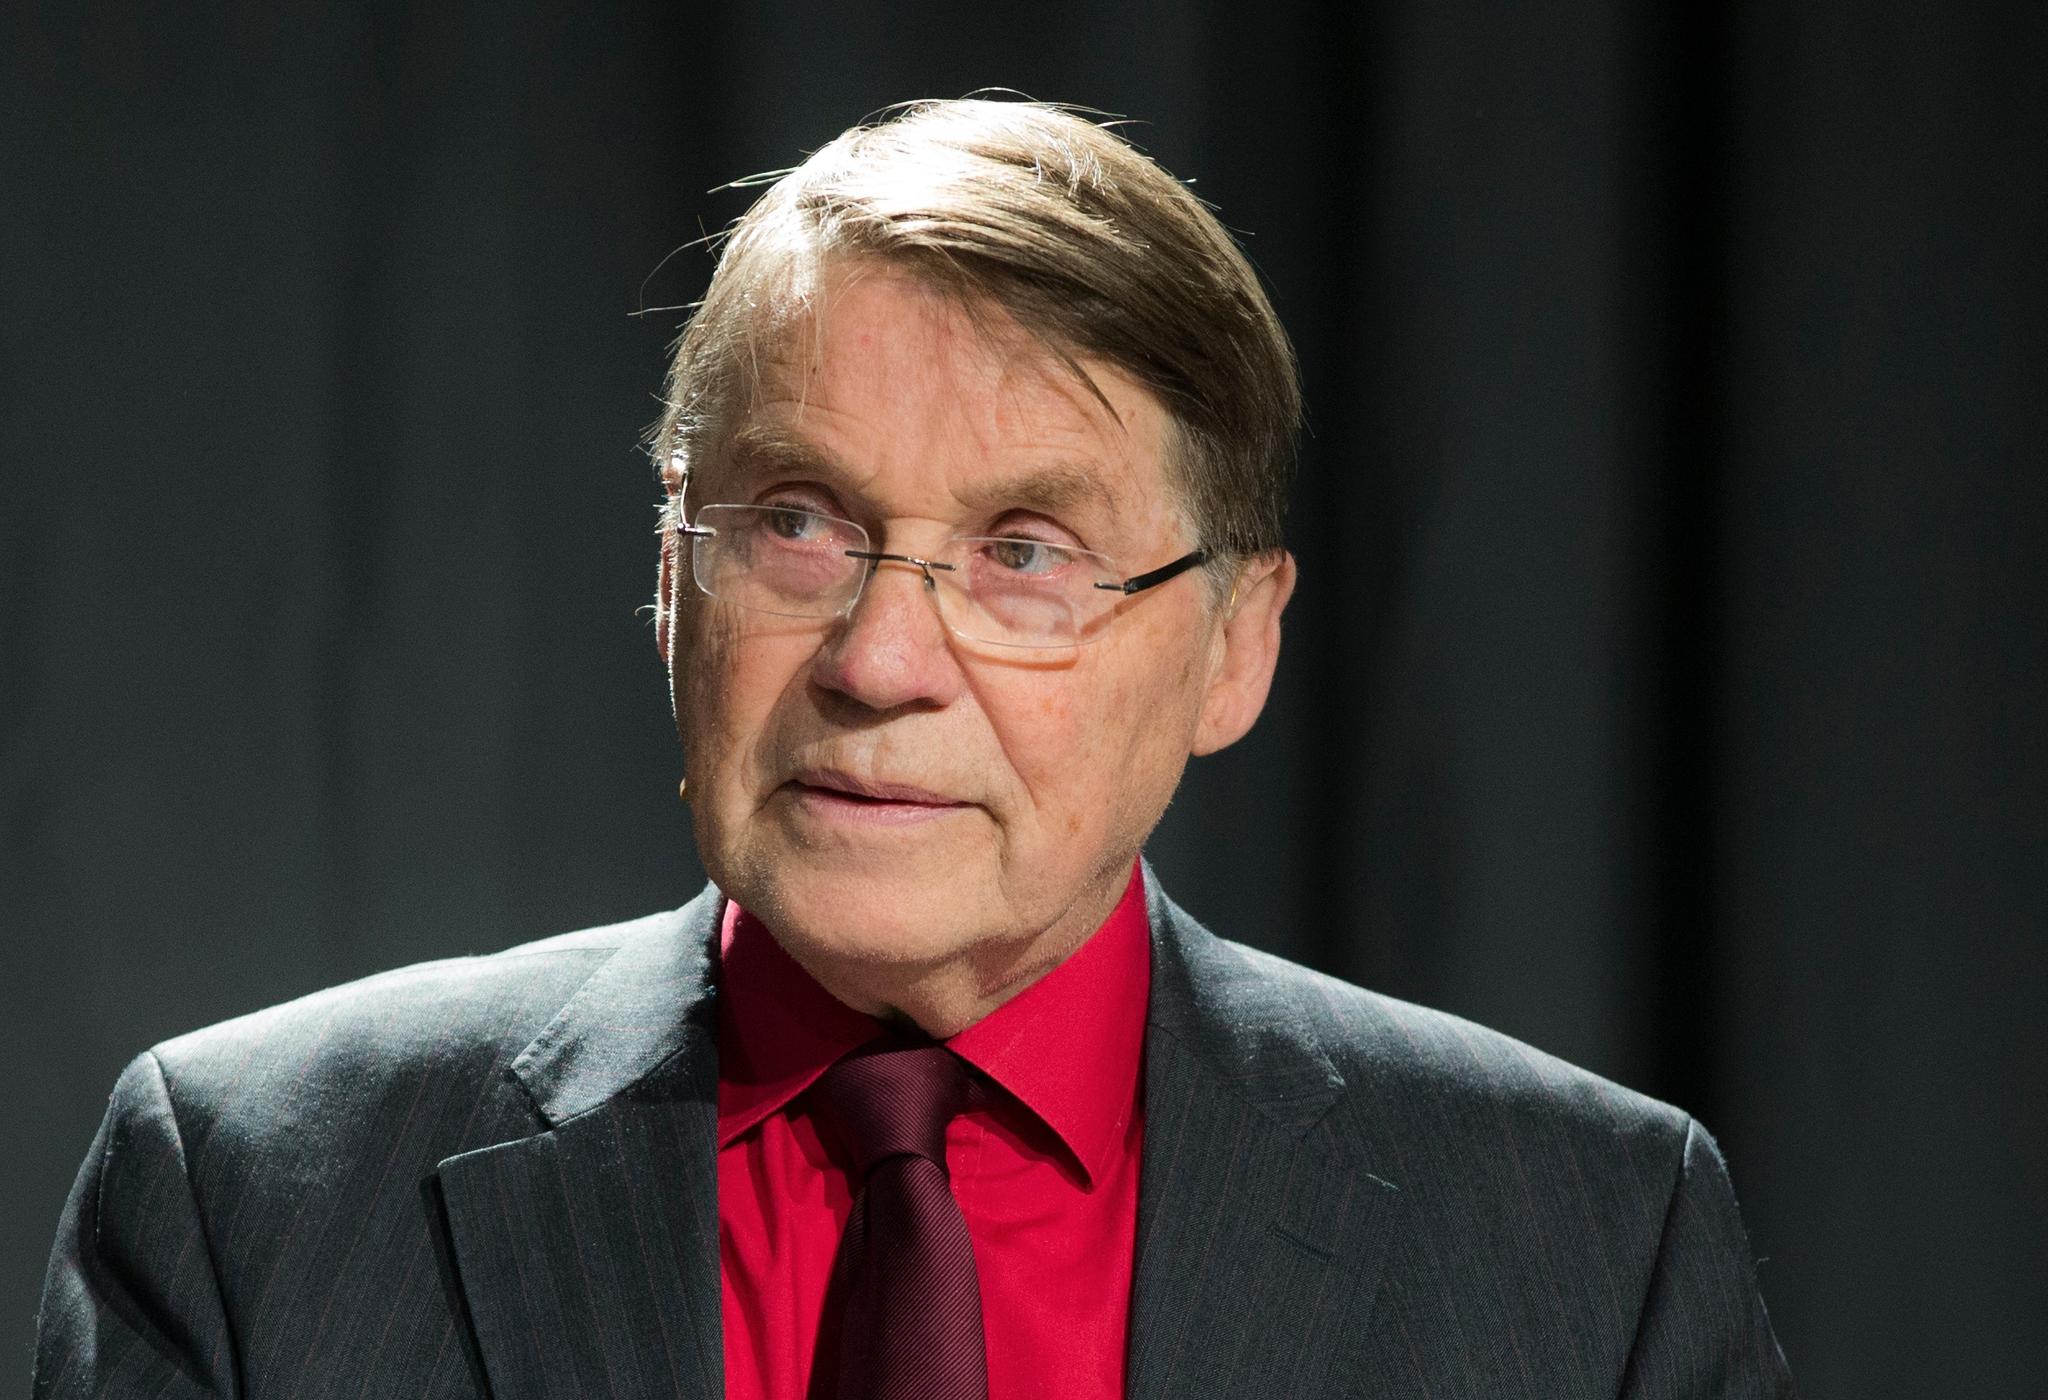 Gunnar Stålsett var biskop i Oslo fra 1998 til 2005. Han markerte seg blant annet med sitt engasjement for homofile og lesbiske.